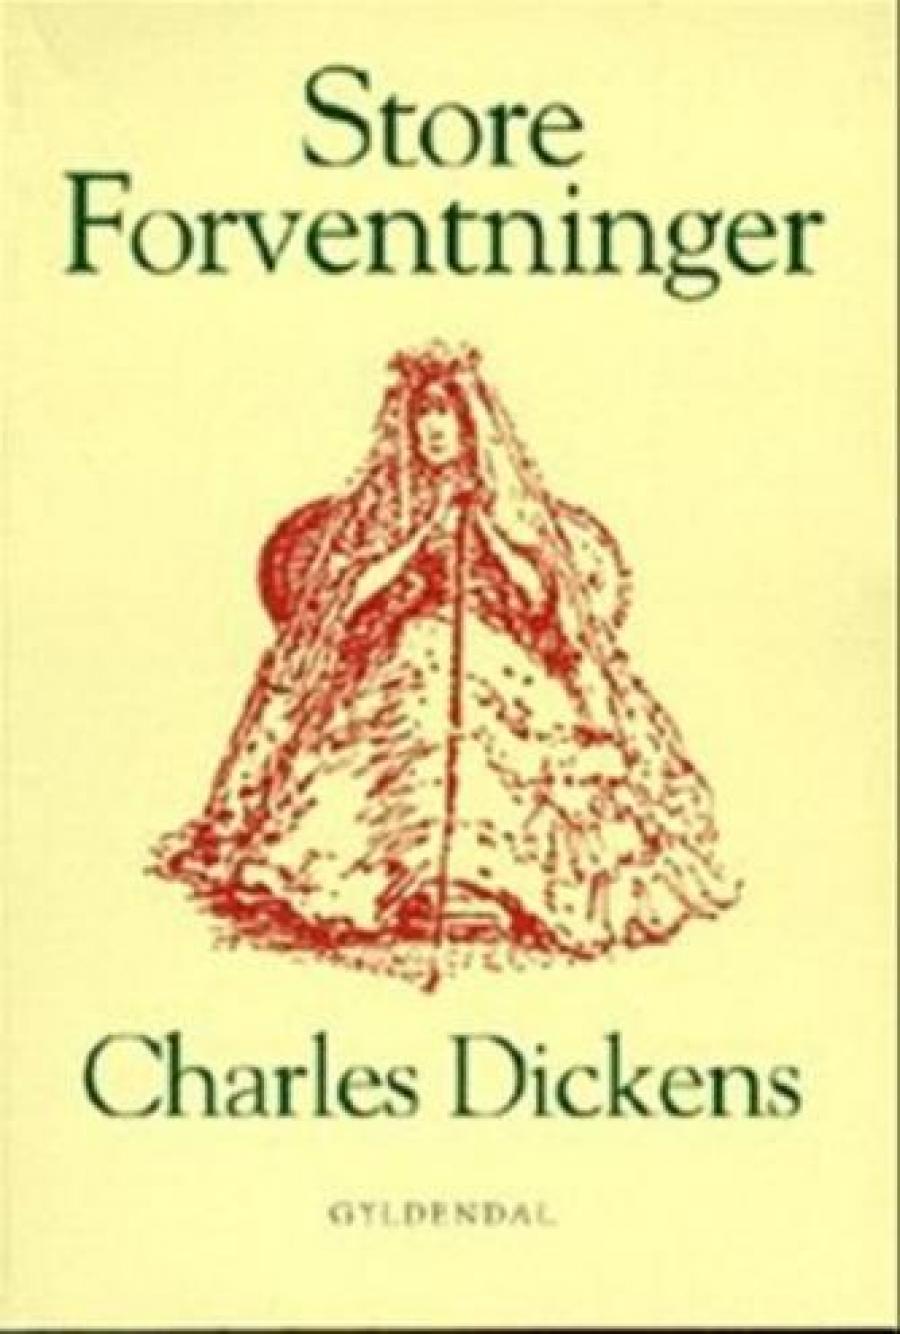 Charles Dickens roman Store forventninger